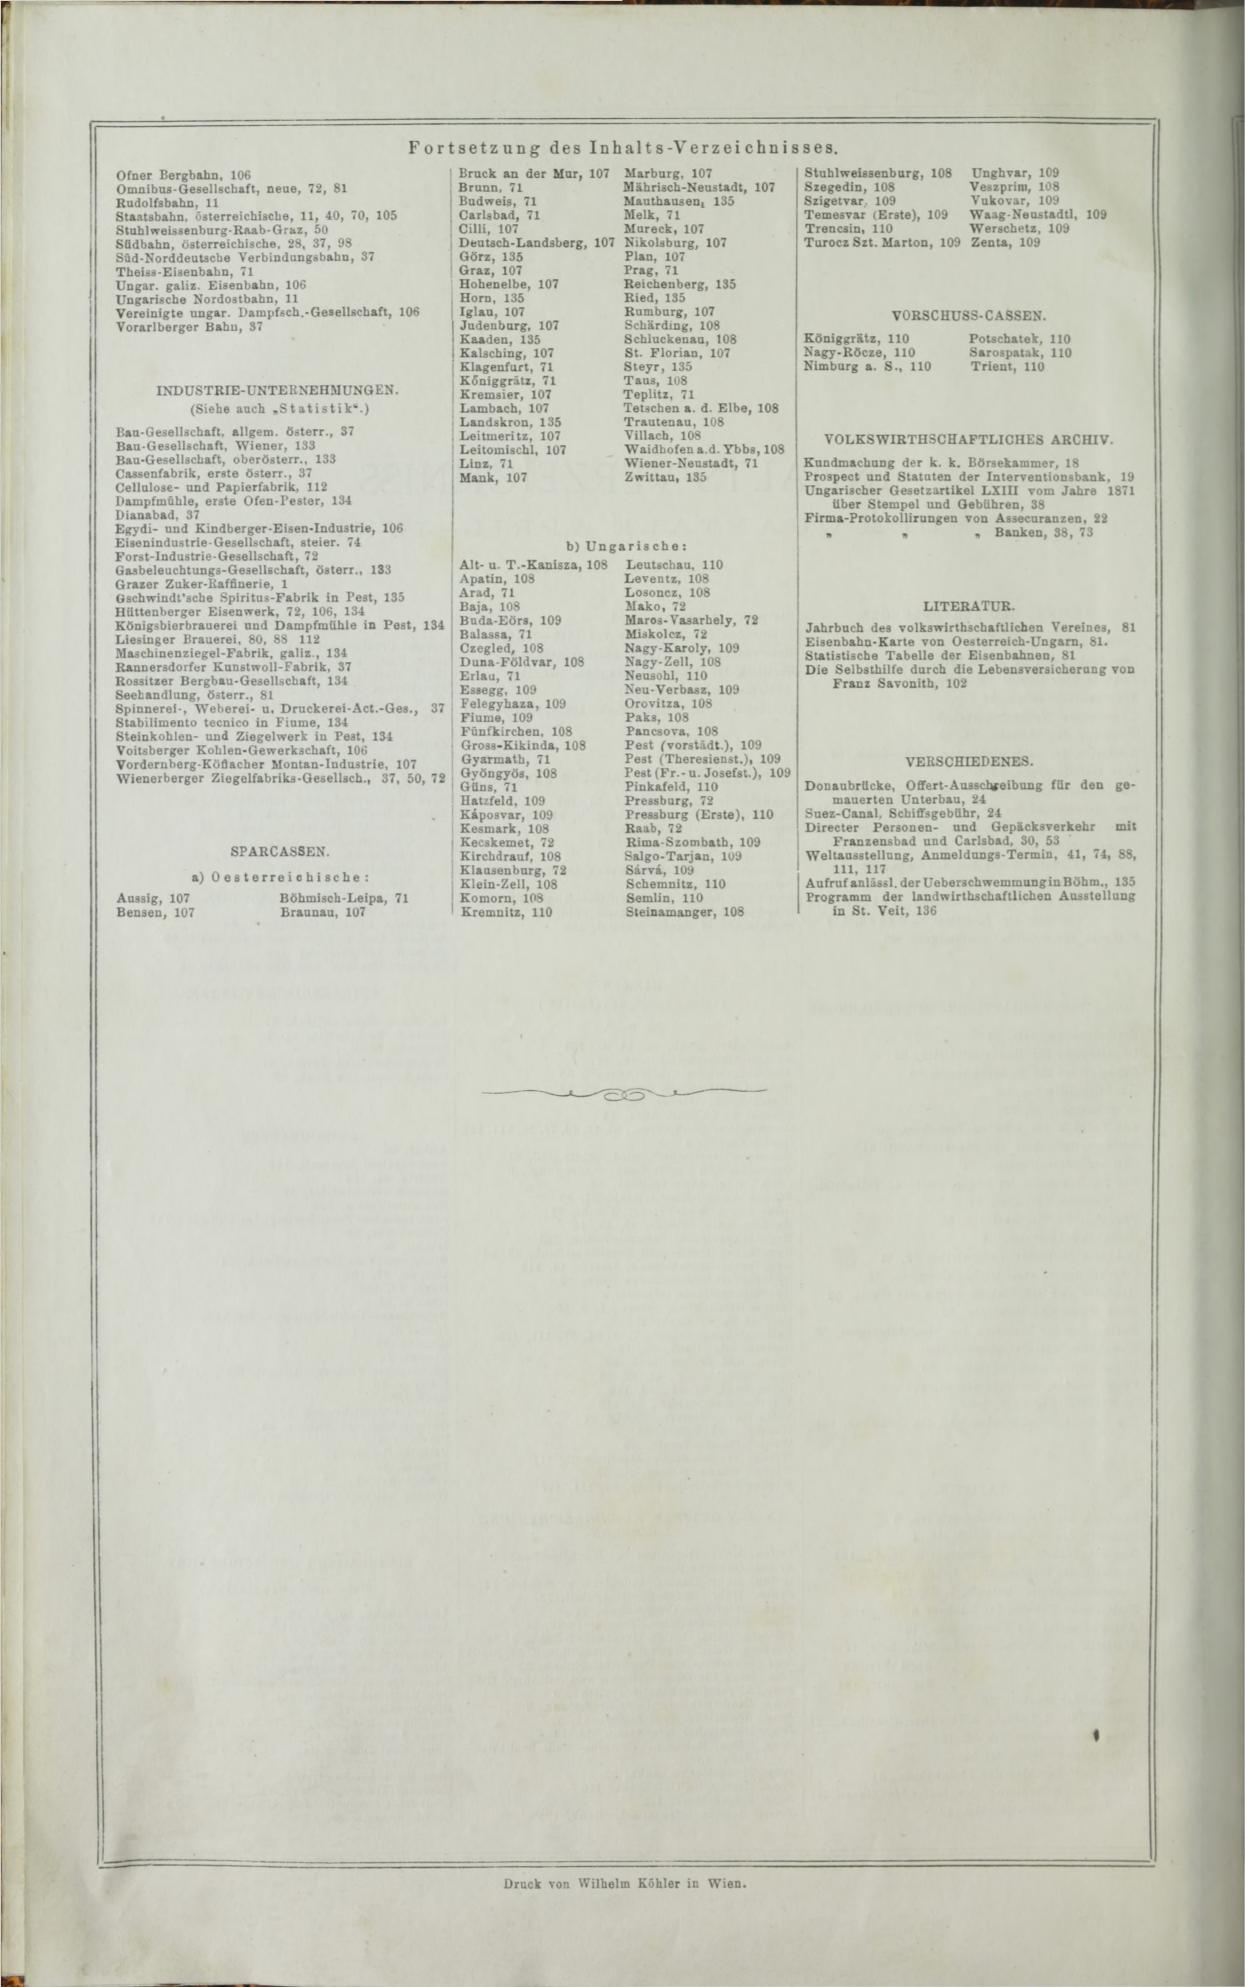 Der Tresor 14.05.1872 - Seite 32